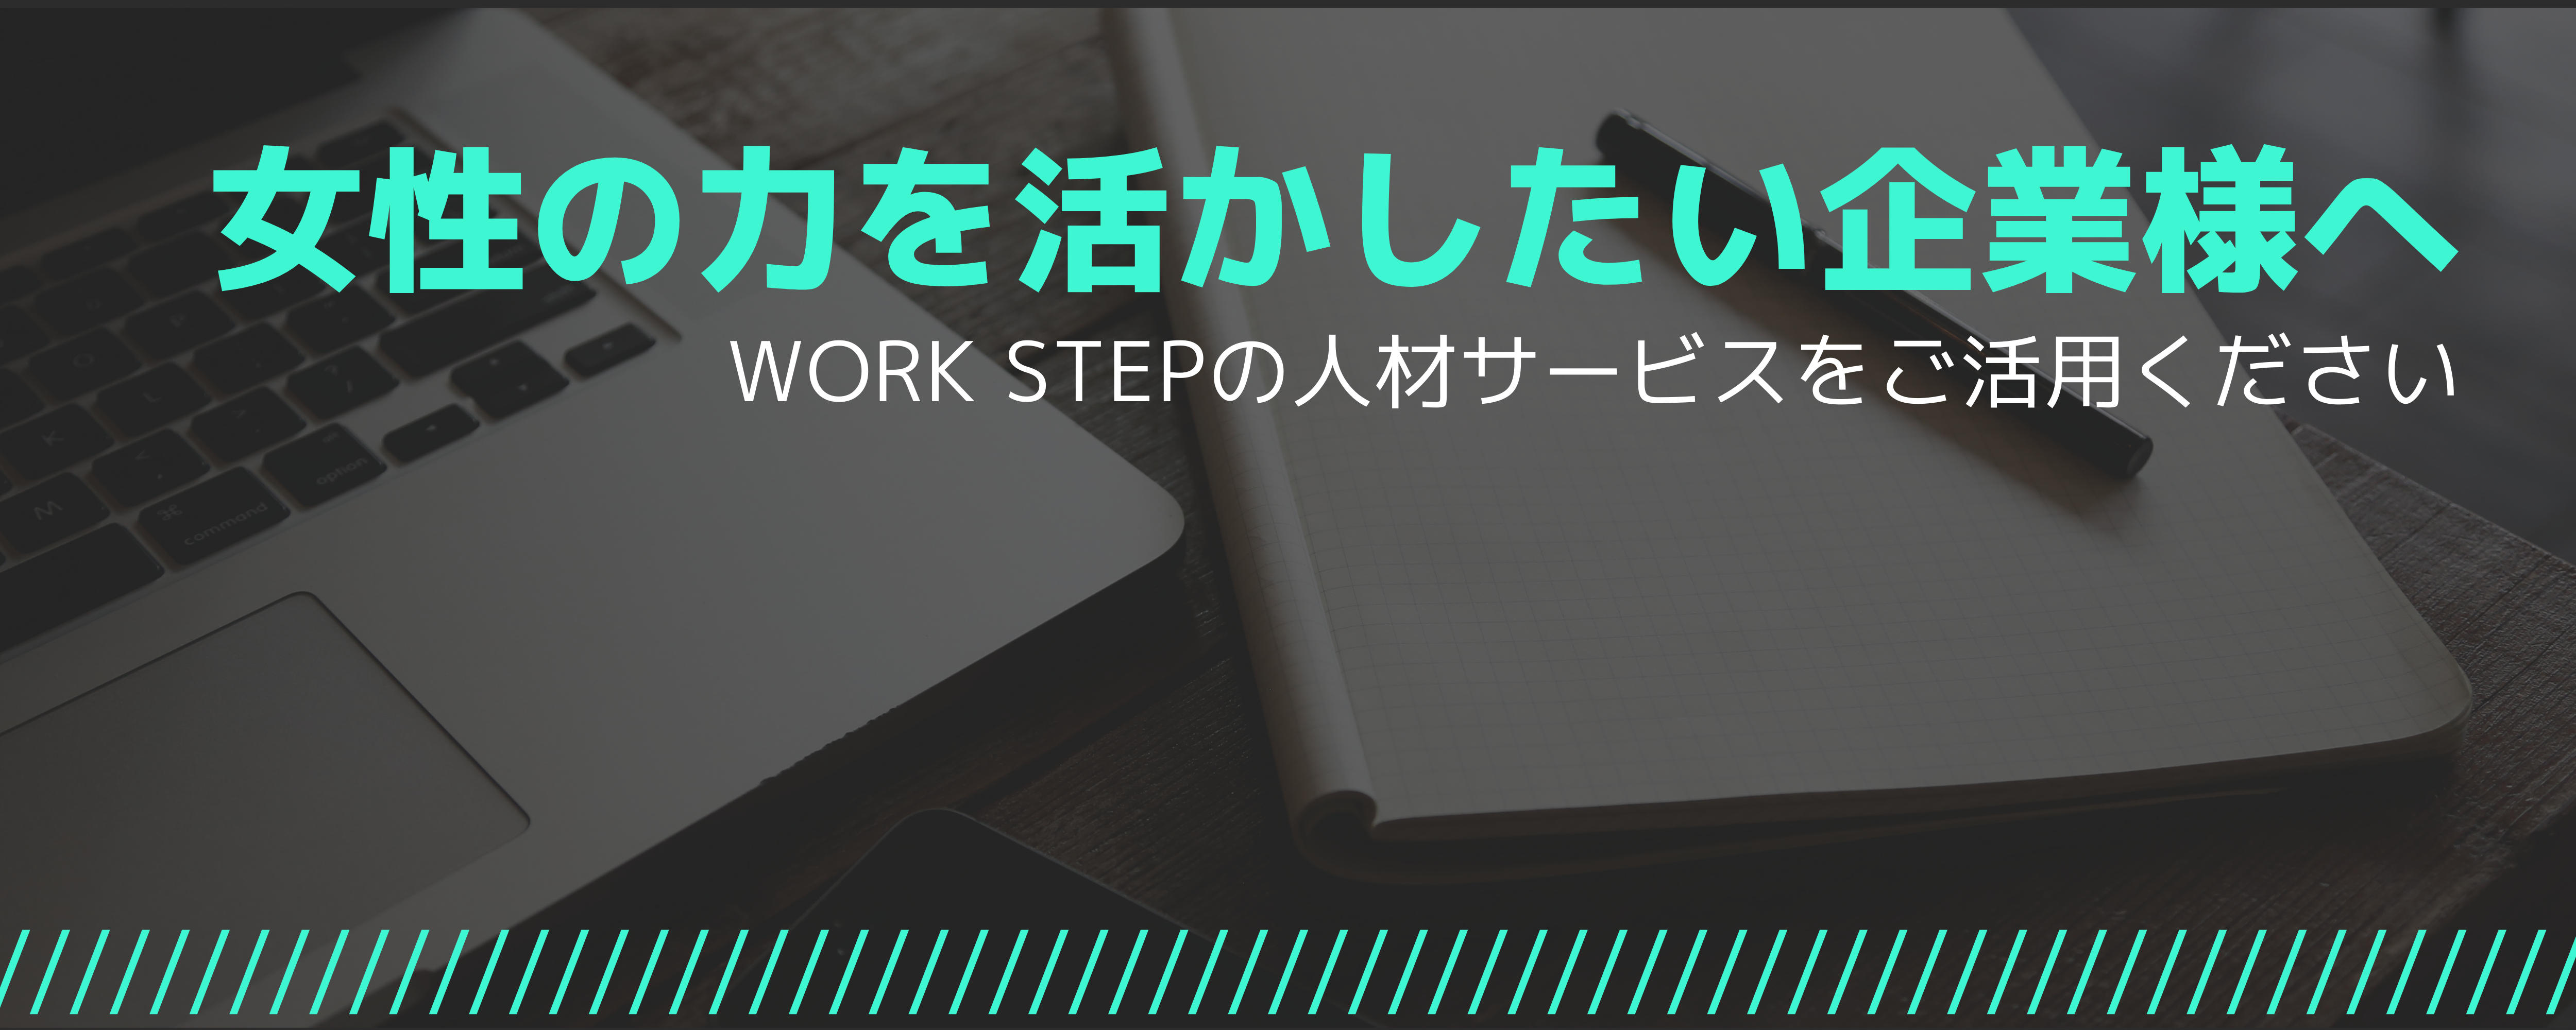 WorkStep(企業向け）